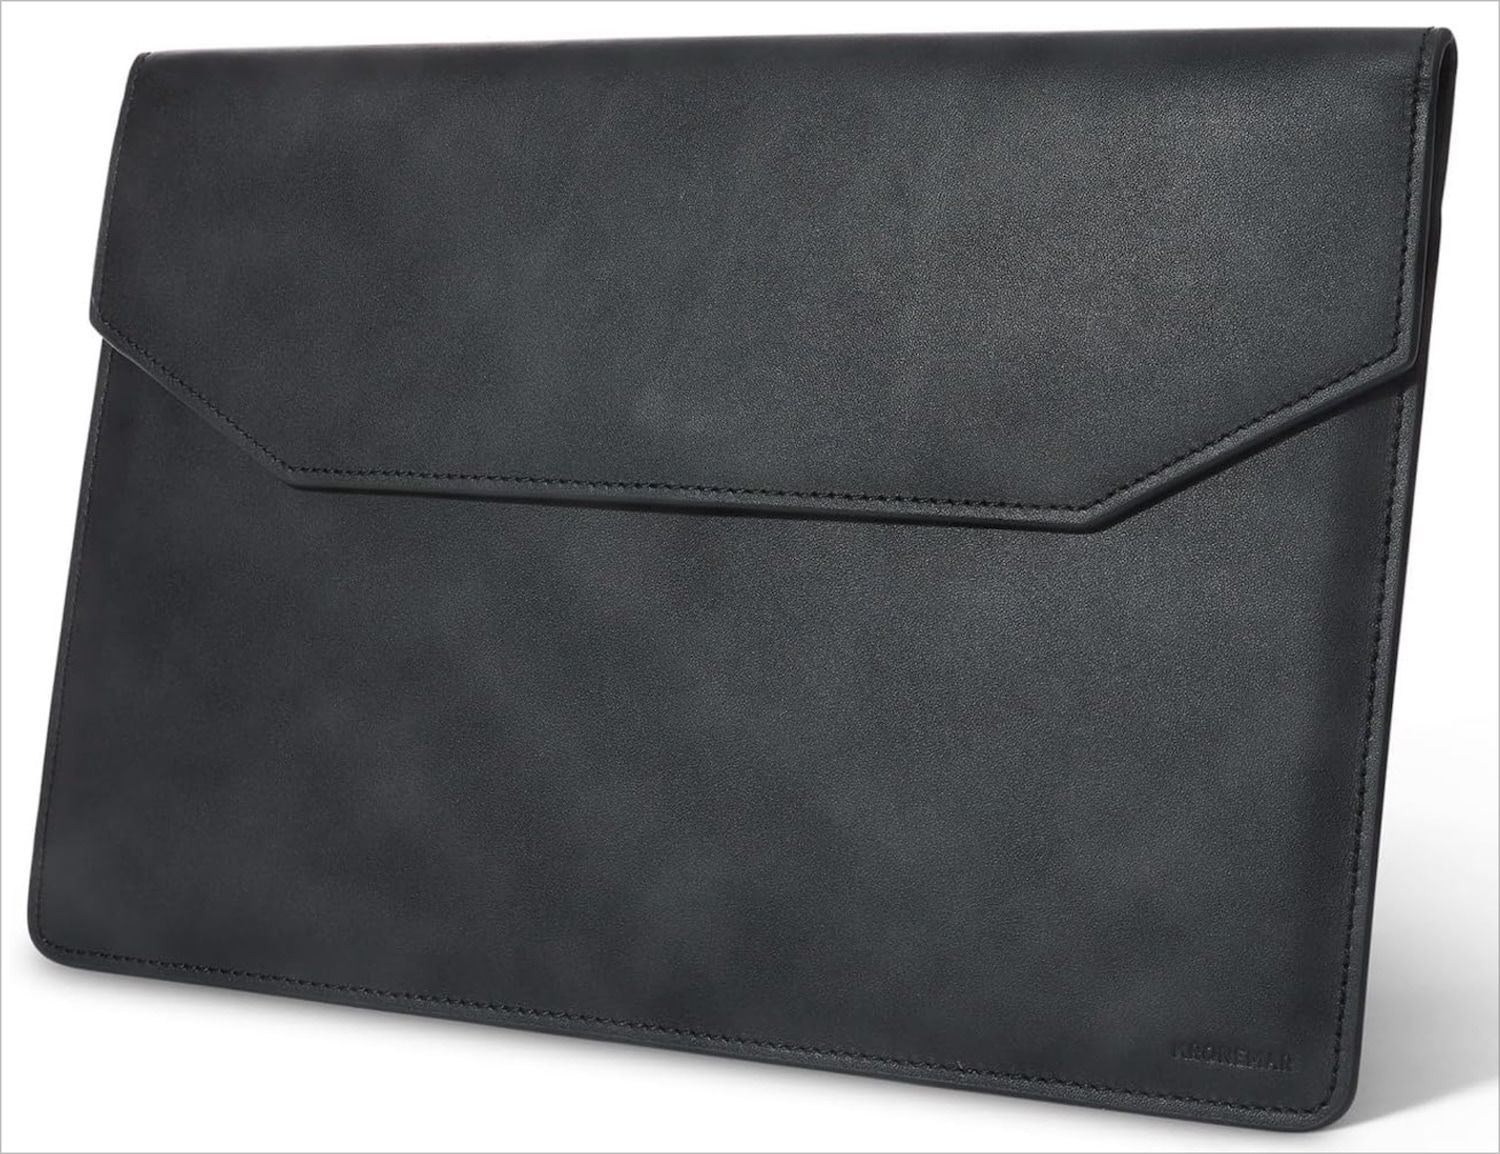 Kronemar full-grain leather MacBook sleeve case